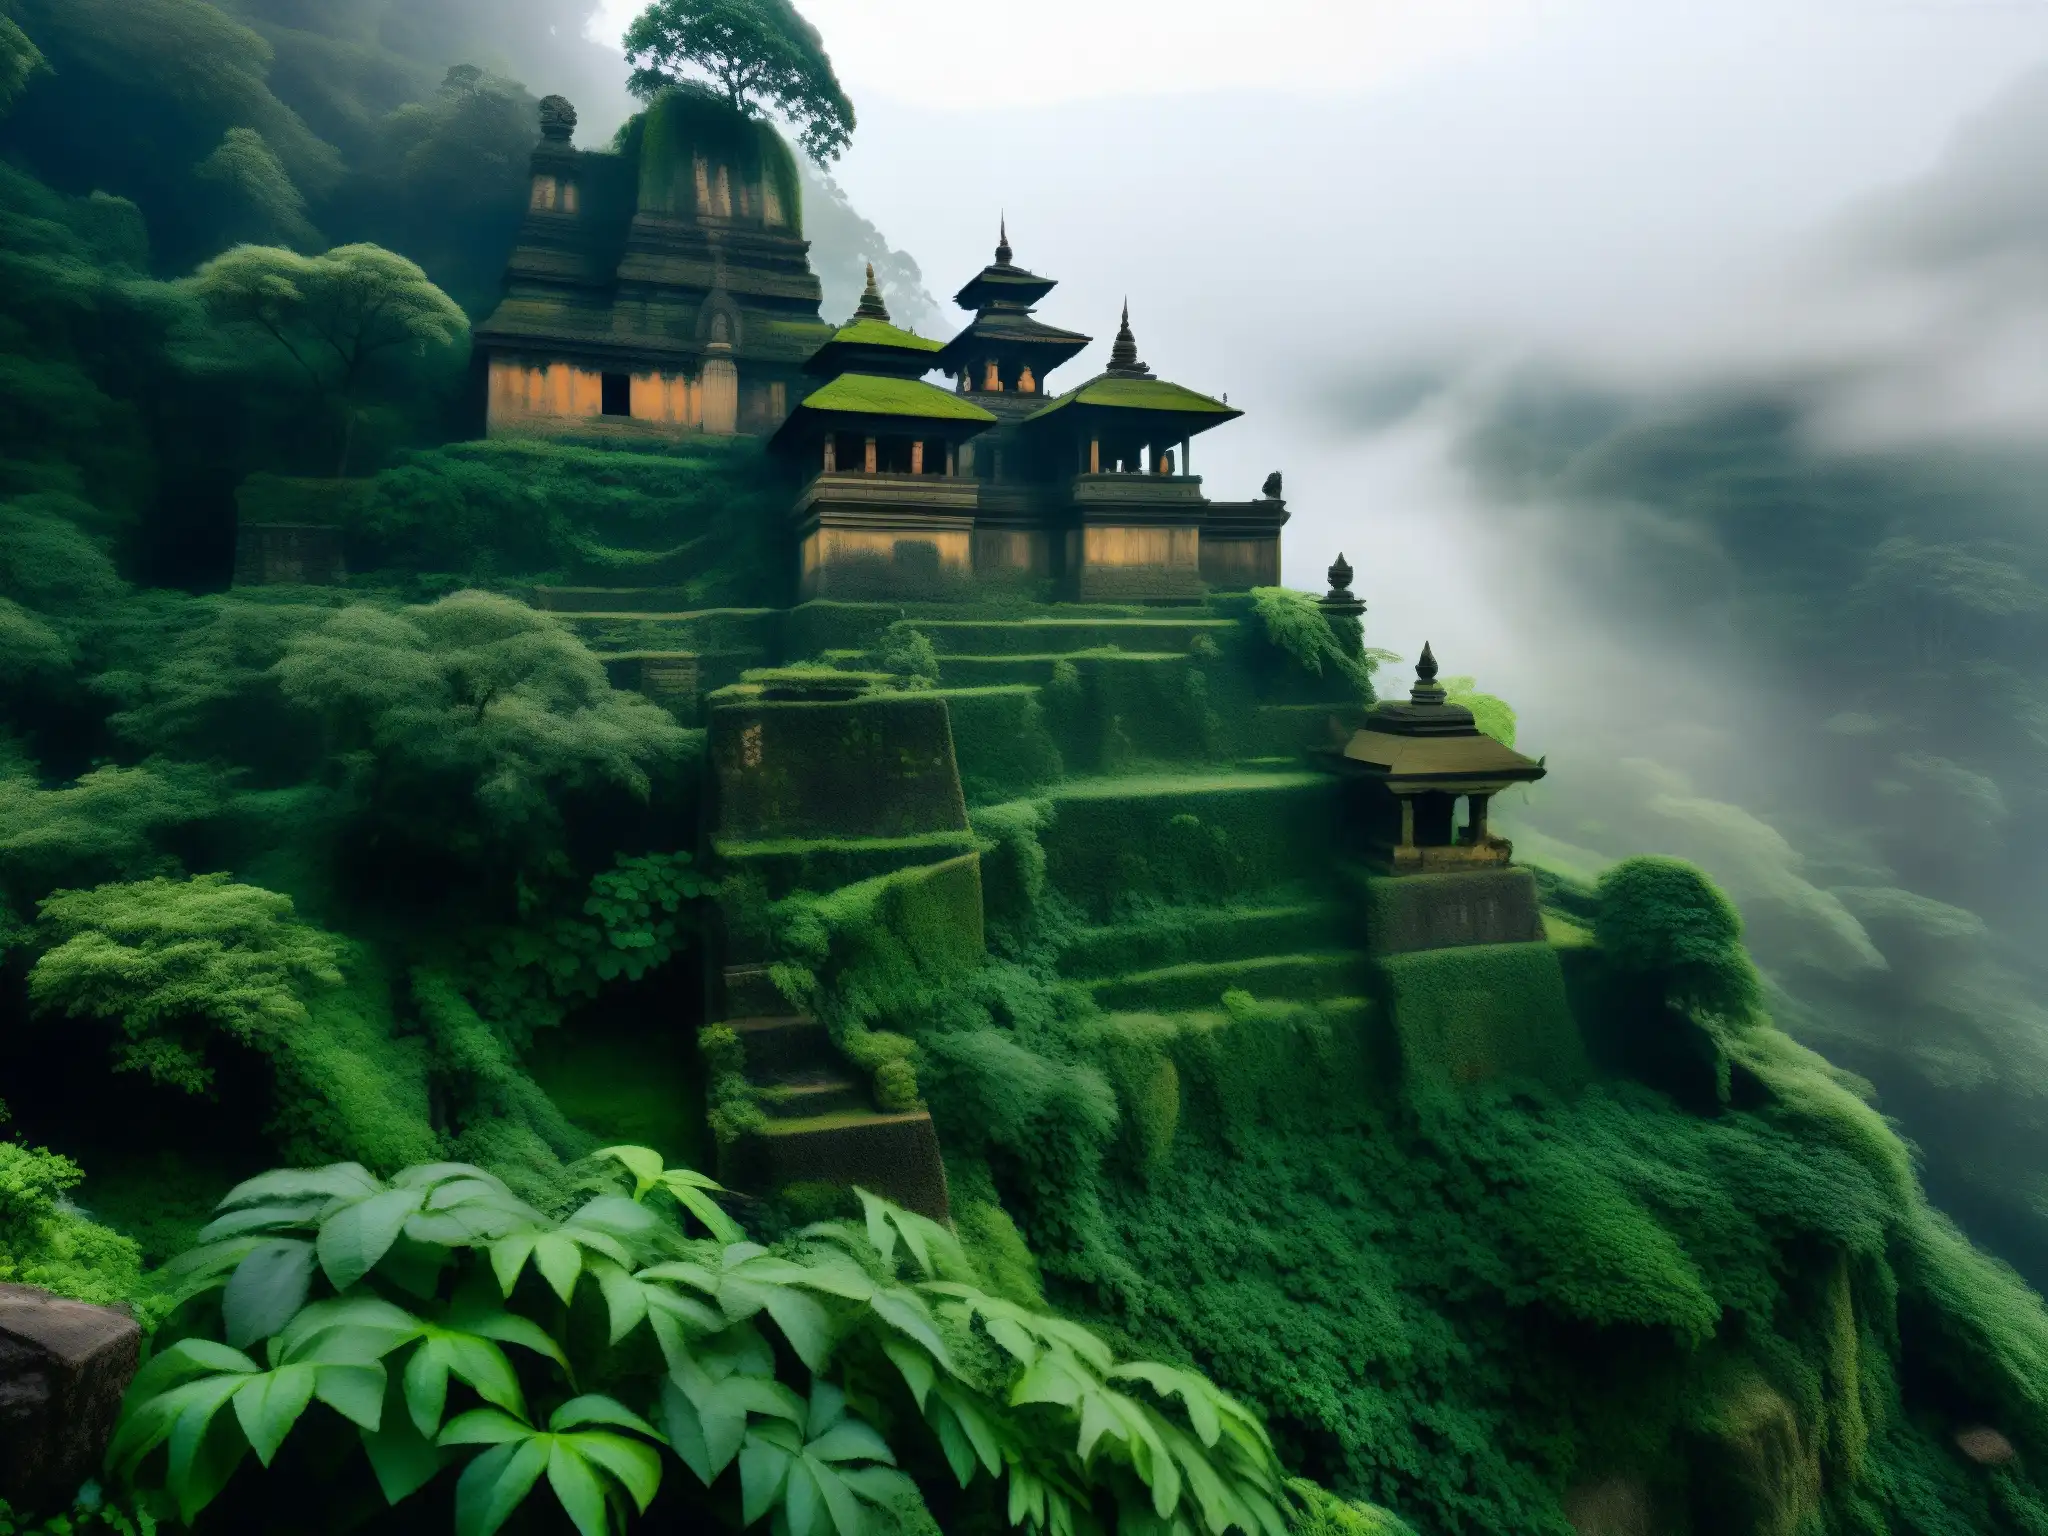 Templo abandonado envuelto en niebla en los bosques de Nepal, evocando espíritus errantes y misterio ancestral